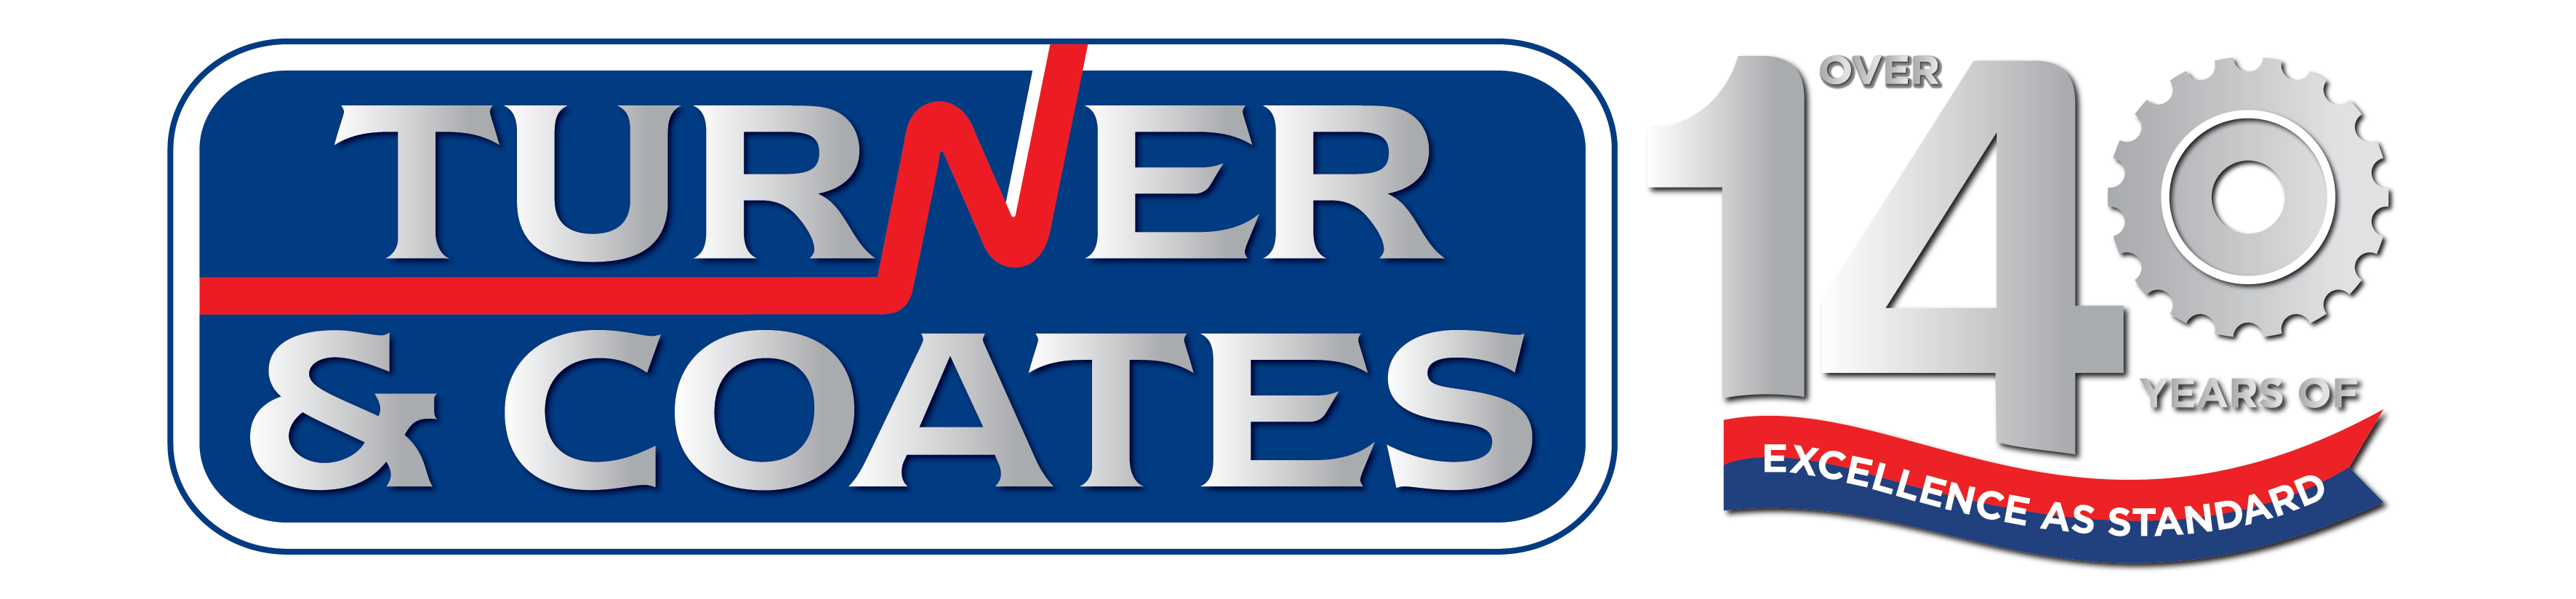 Turner & Coates logo